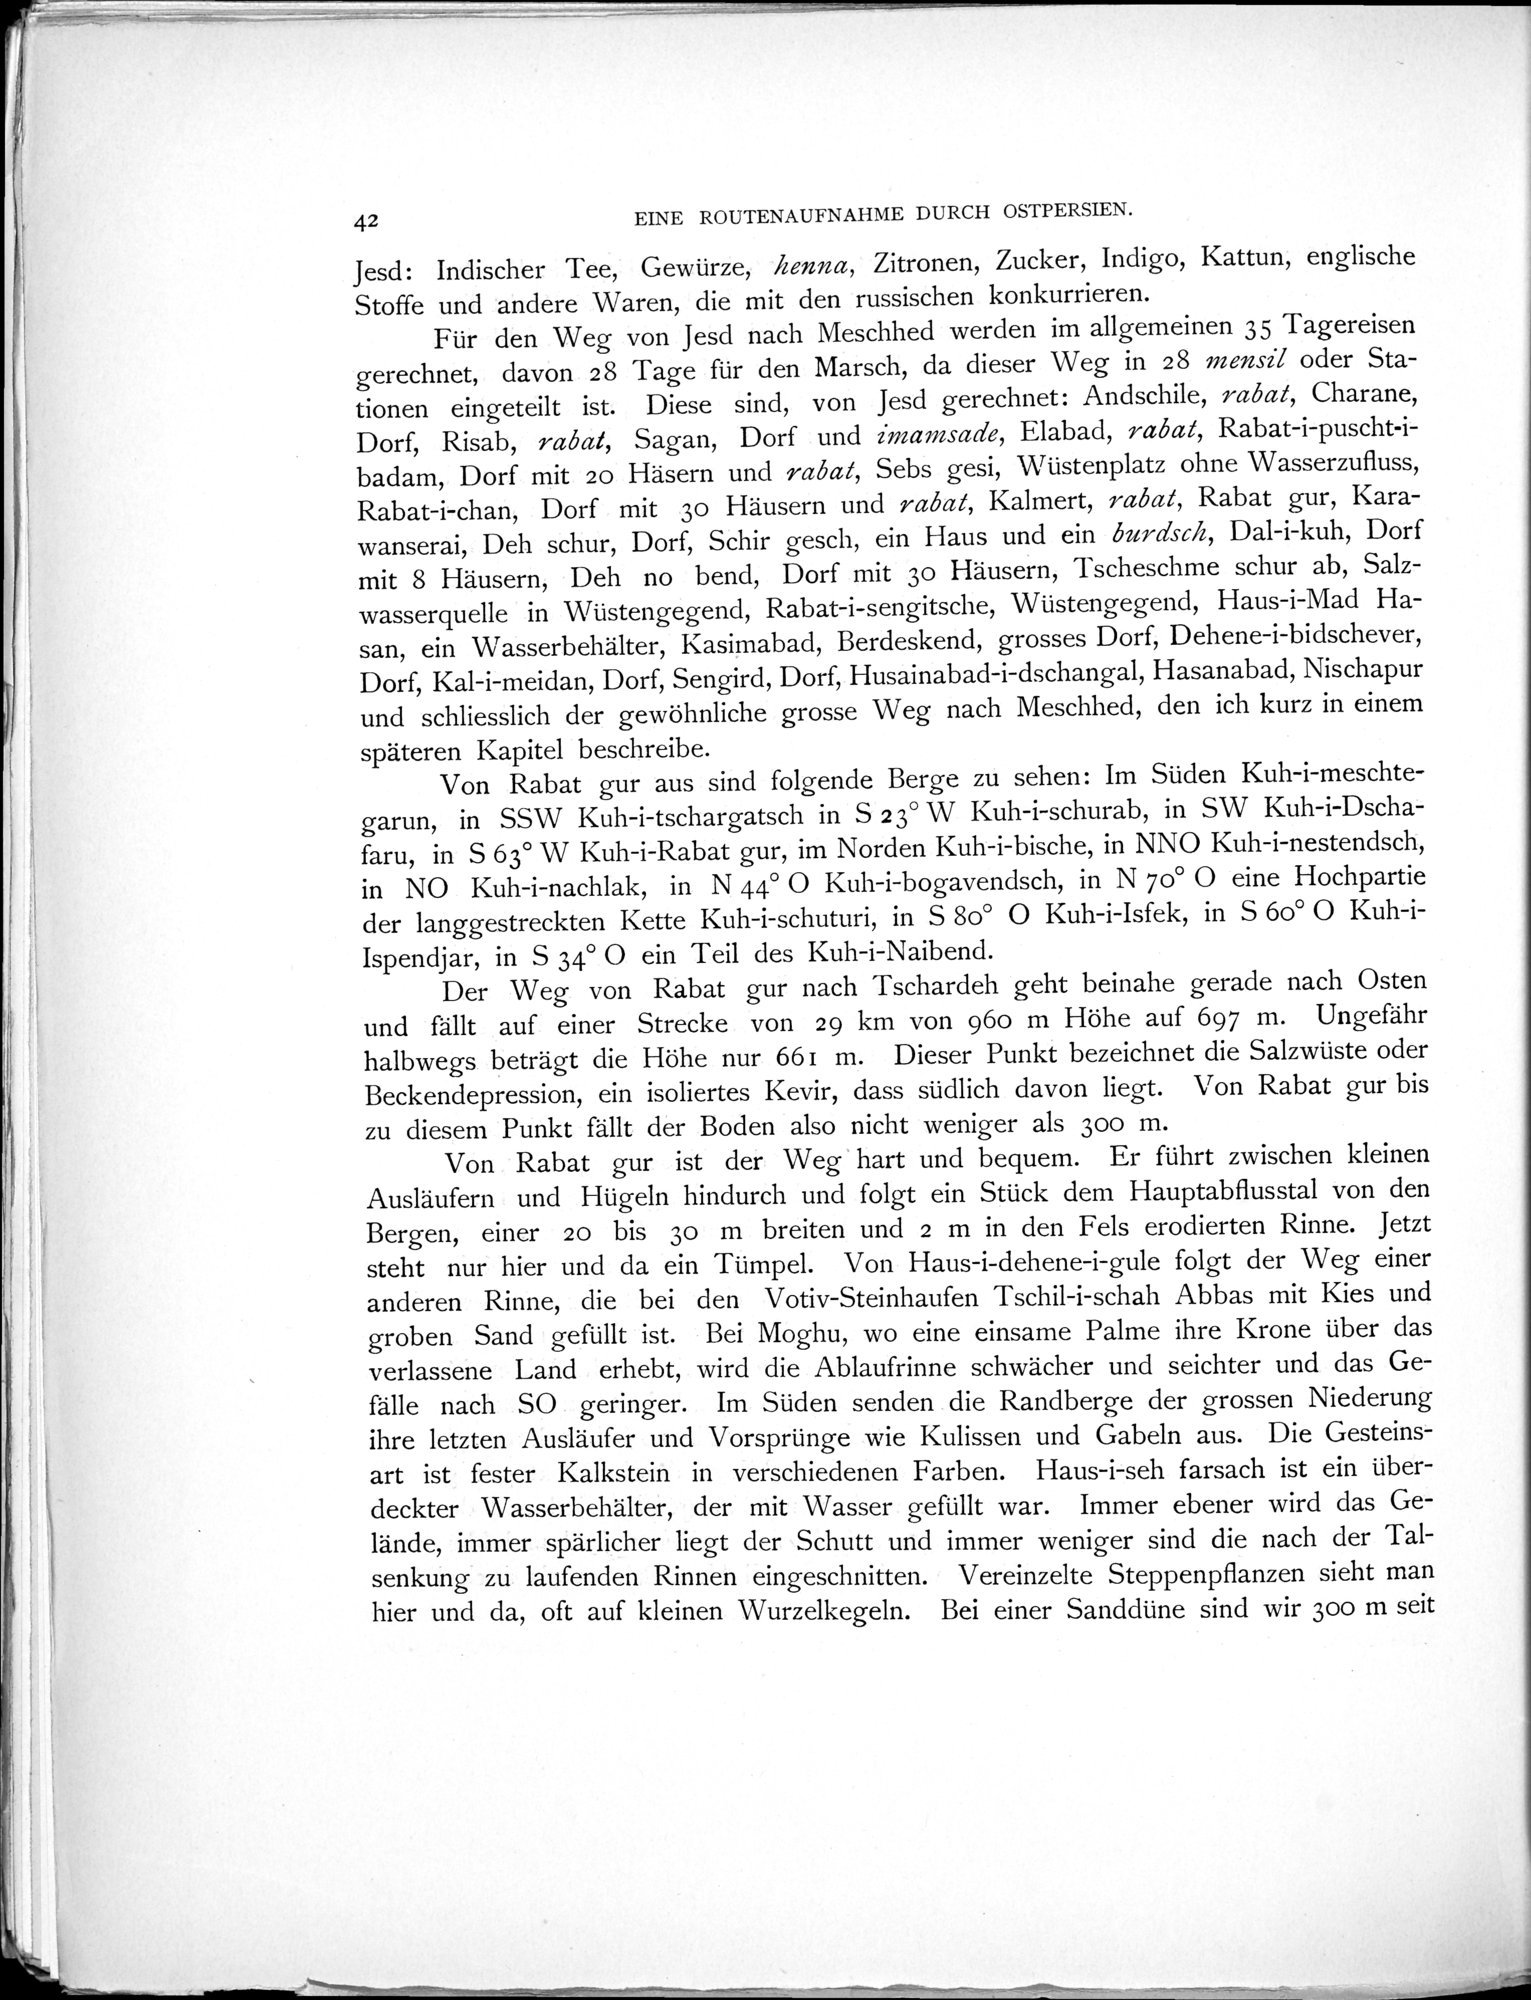 Eine Routenaufnahme durch Ostpersien : vol.1 / Page 120 (Grayscale High Resolution Image)